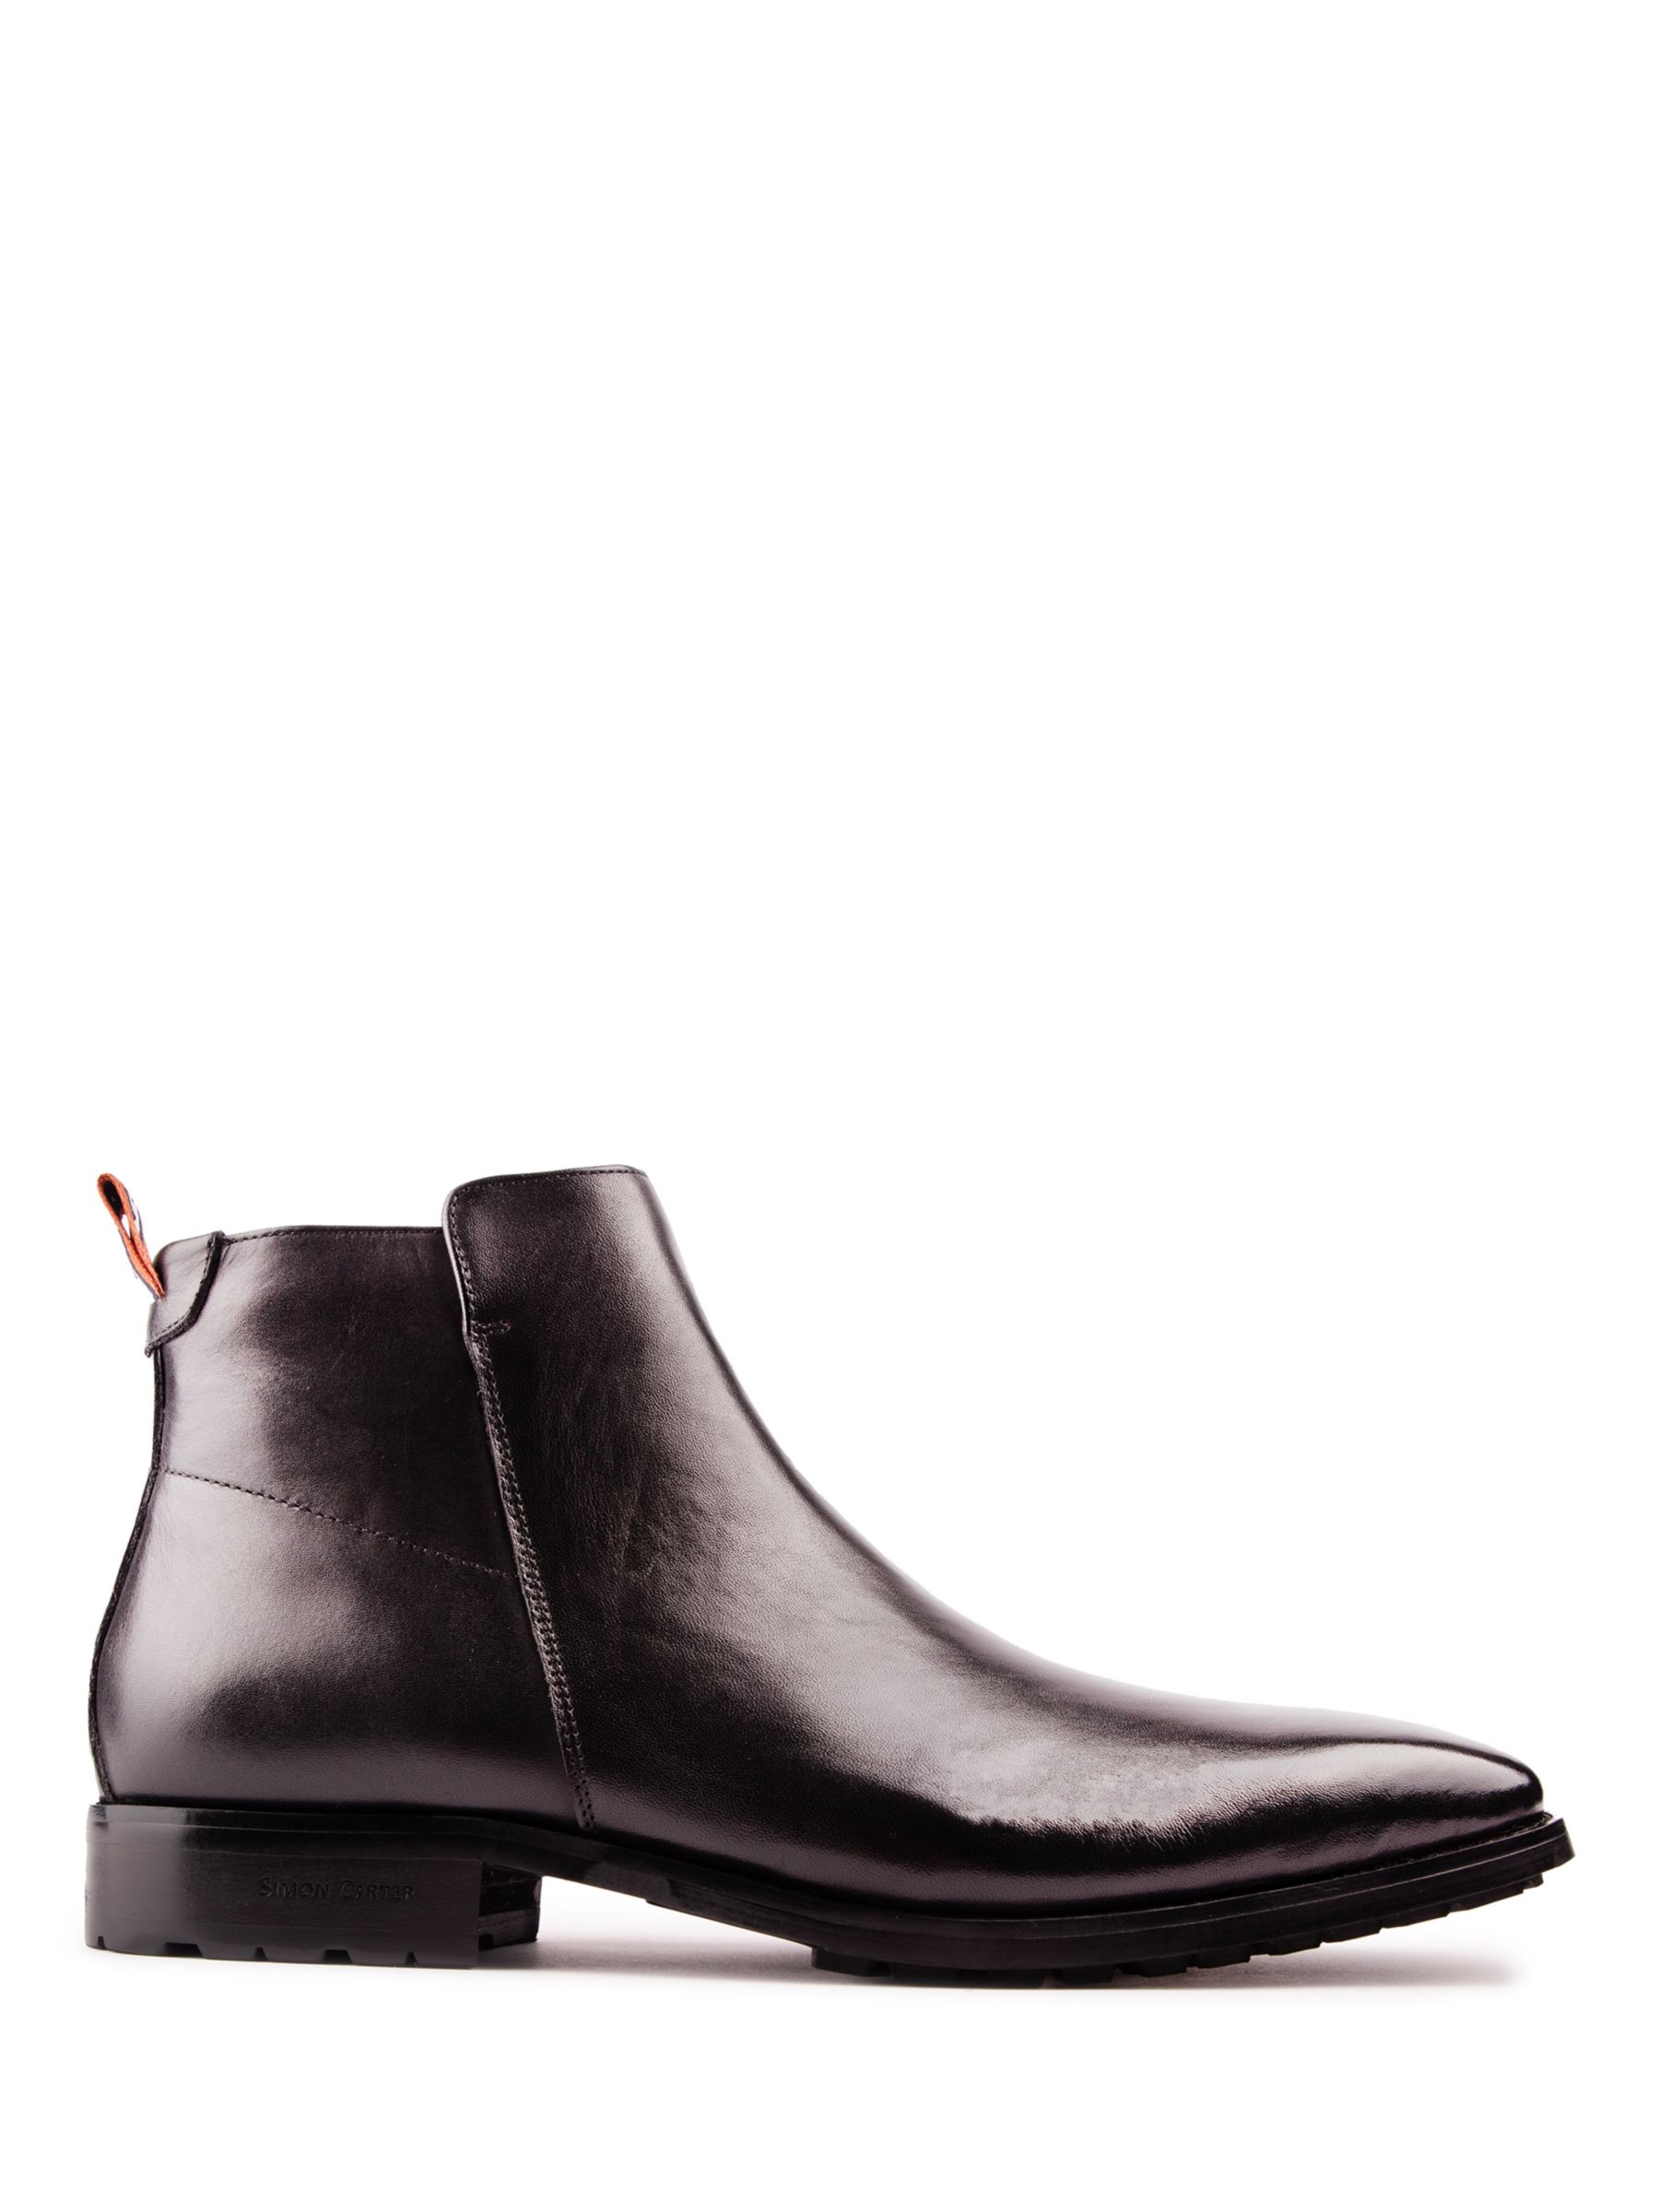 Кожаные ботинки челси Primrose Simon Carter, черный кожаные ботинки челси astrex simon carter черный